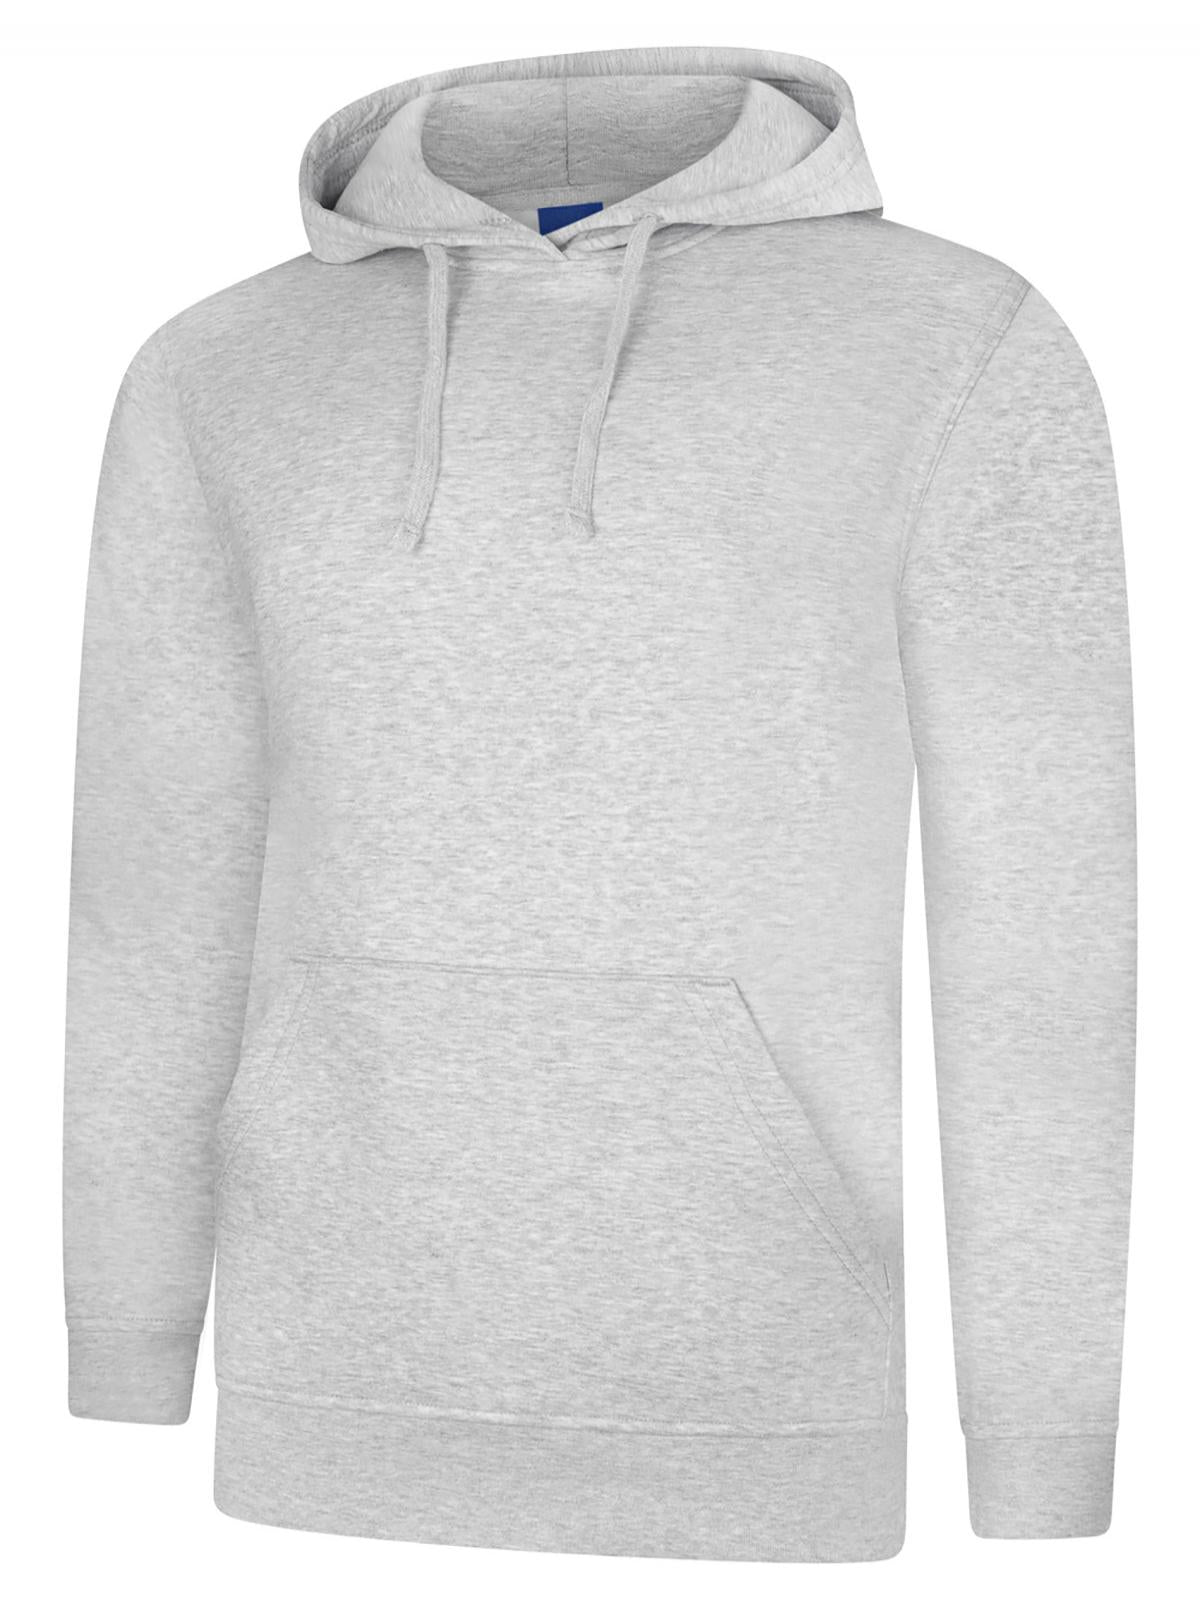 Uneek Deluxe Hooded Sweatshirt UC509 - Heather Grey